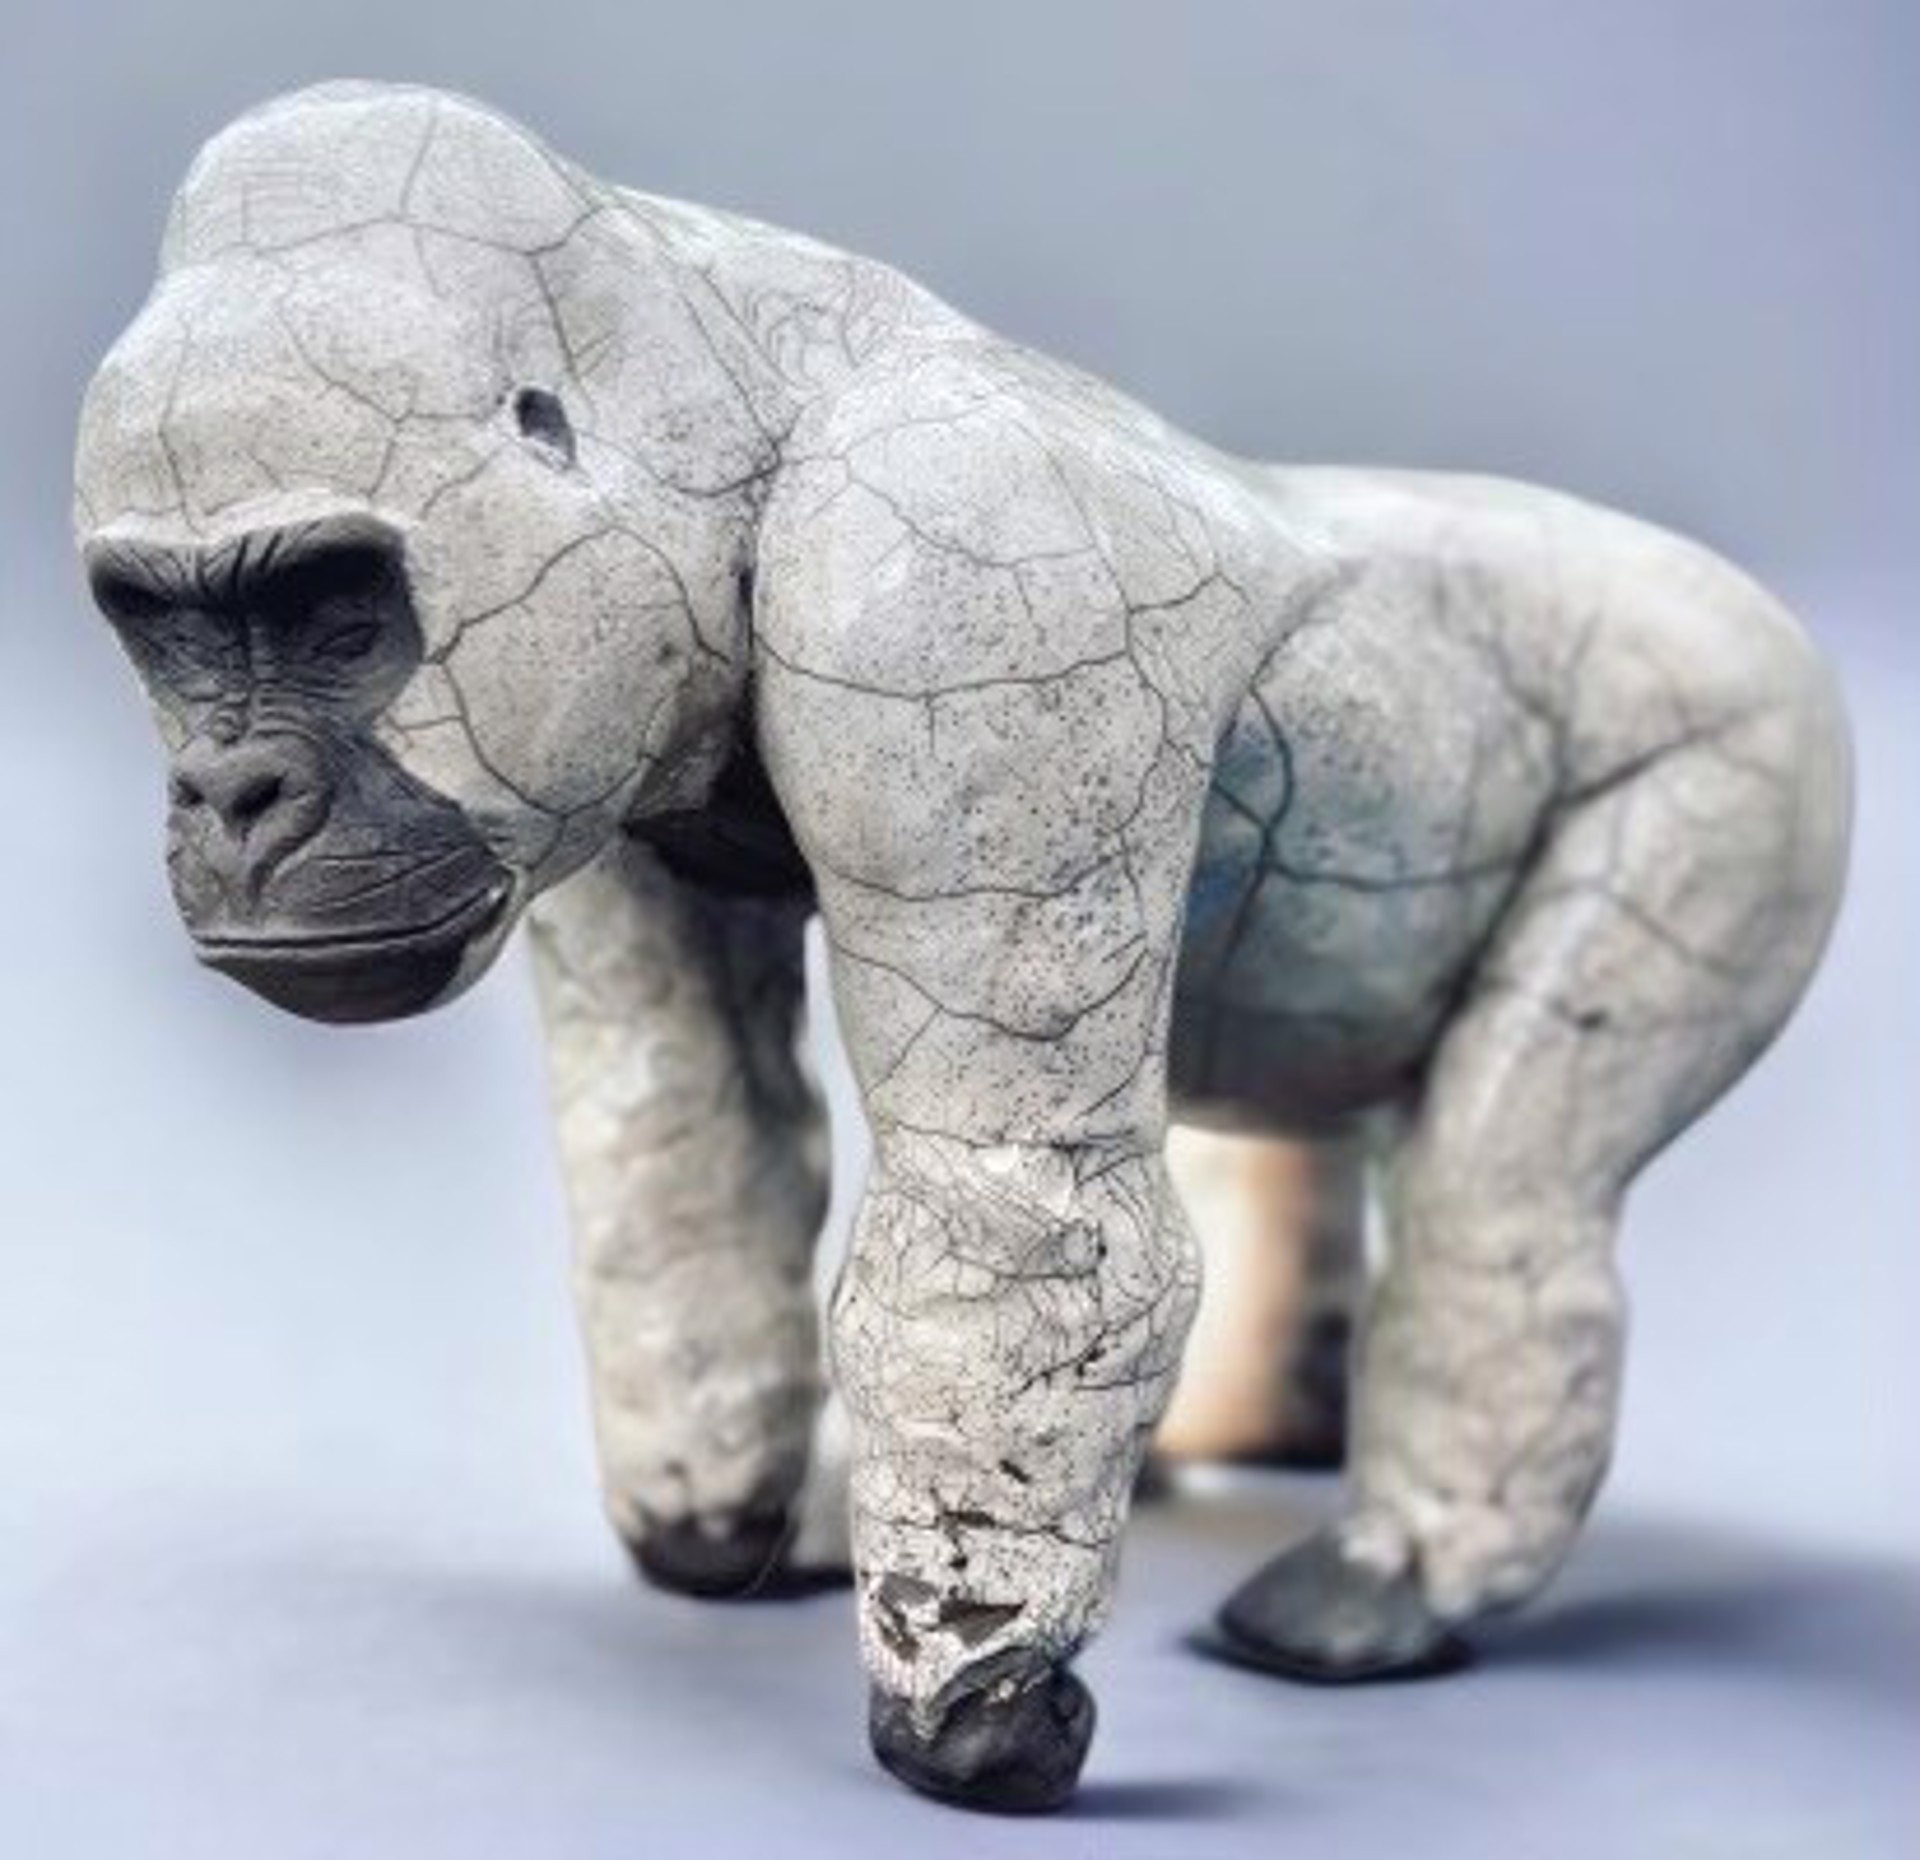 Gorilla by Owen Mann